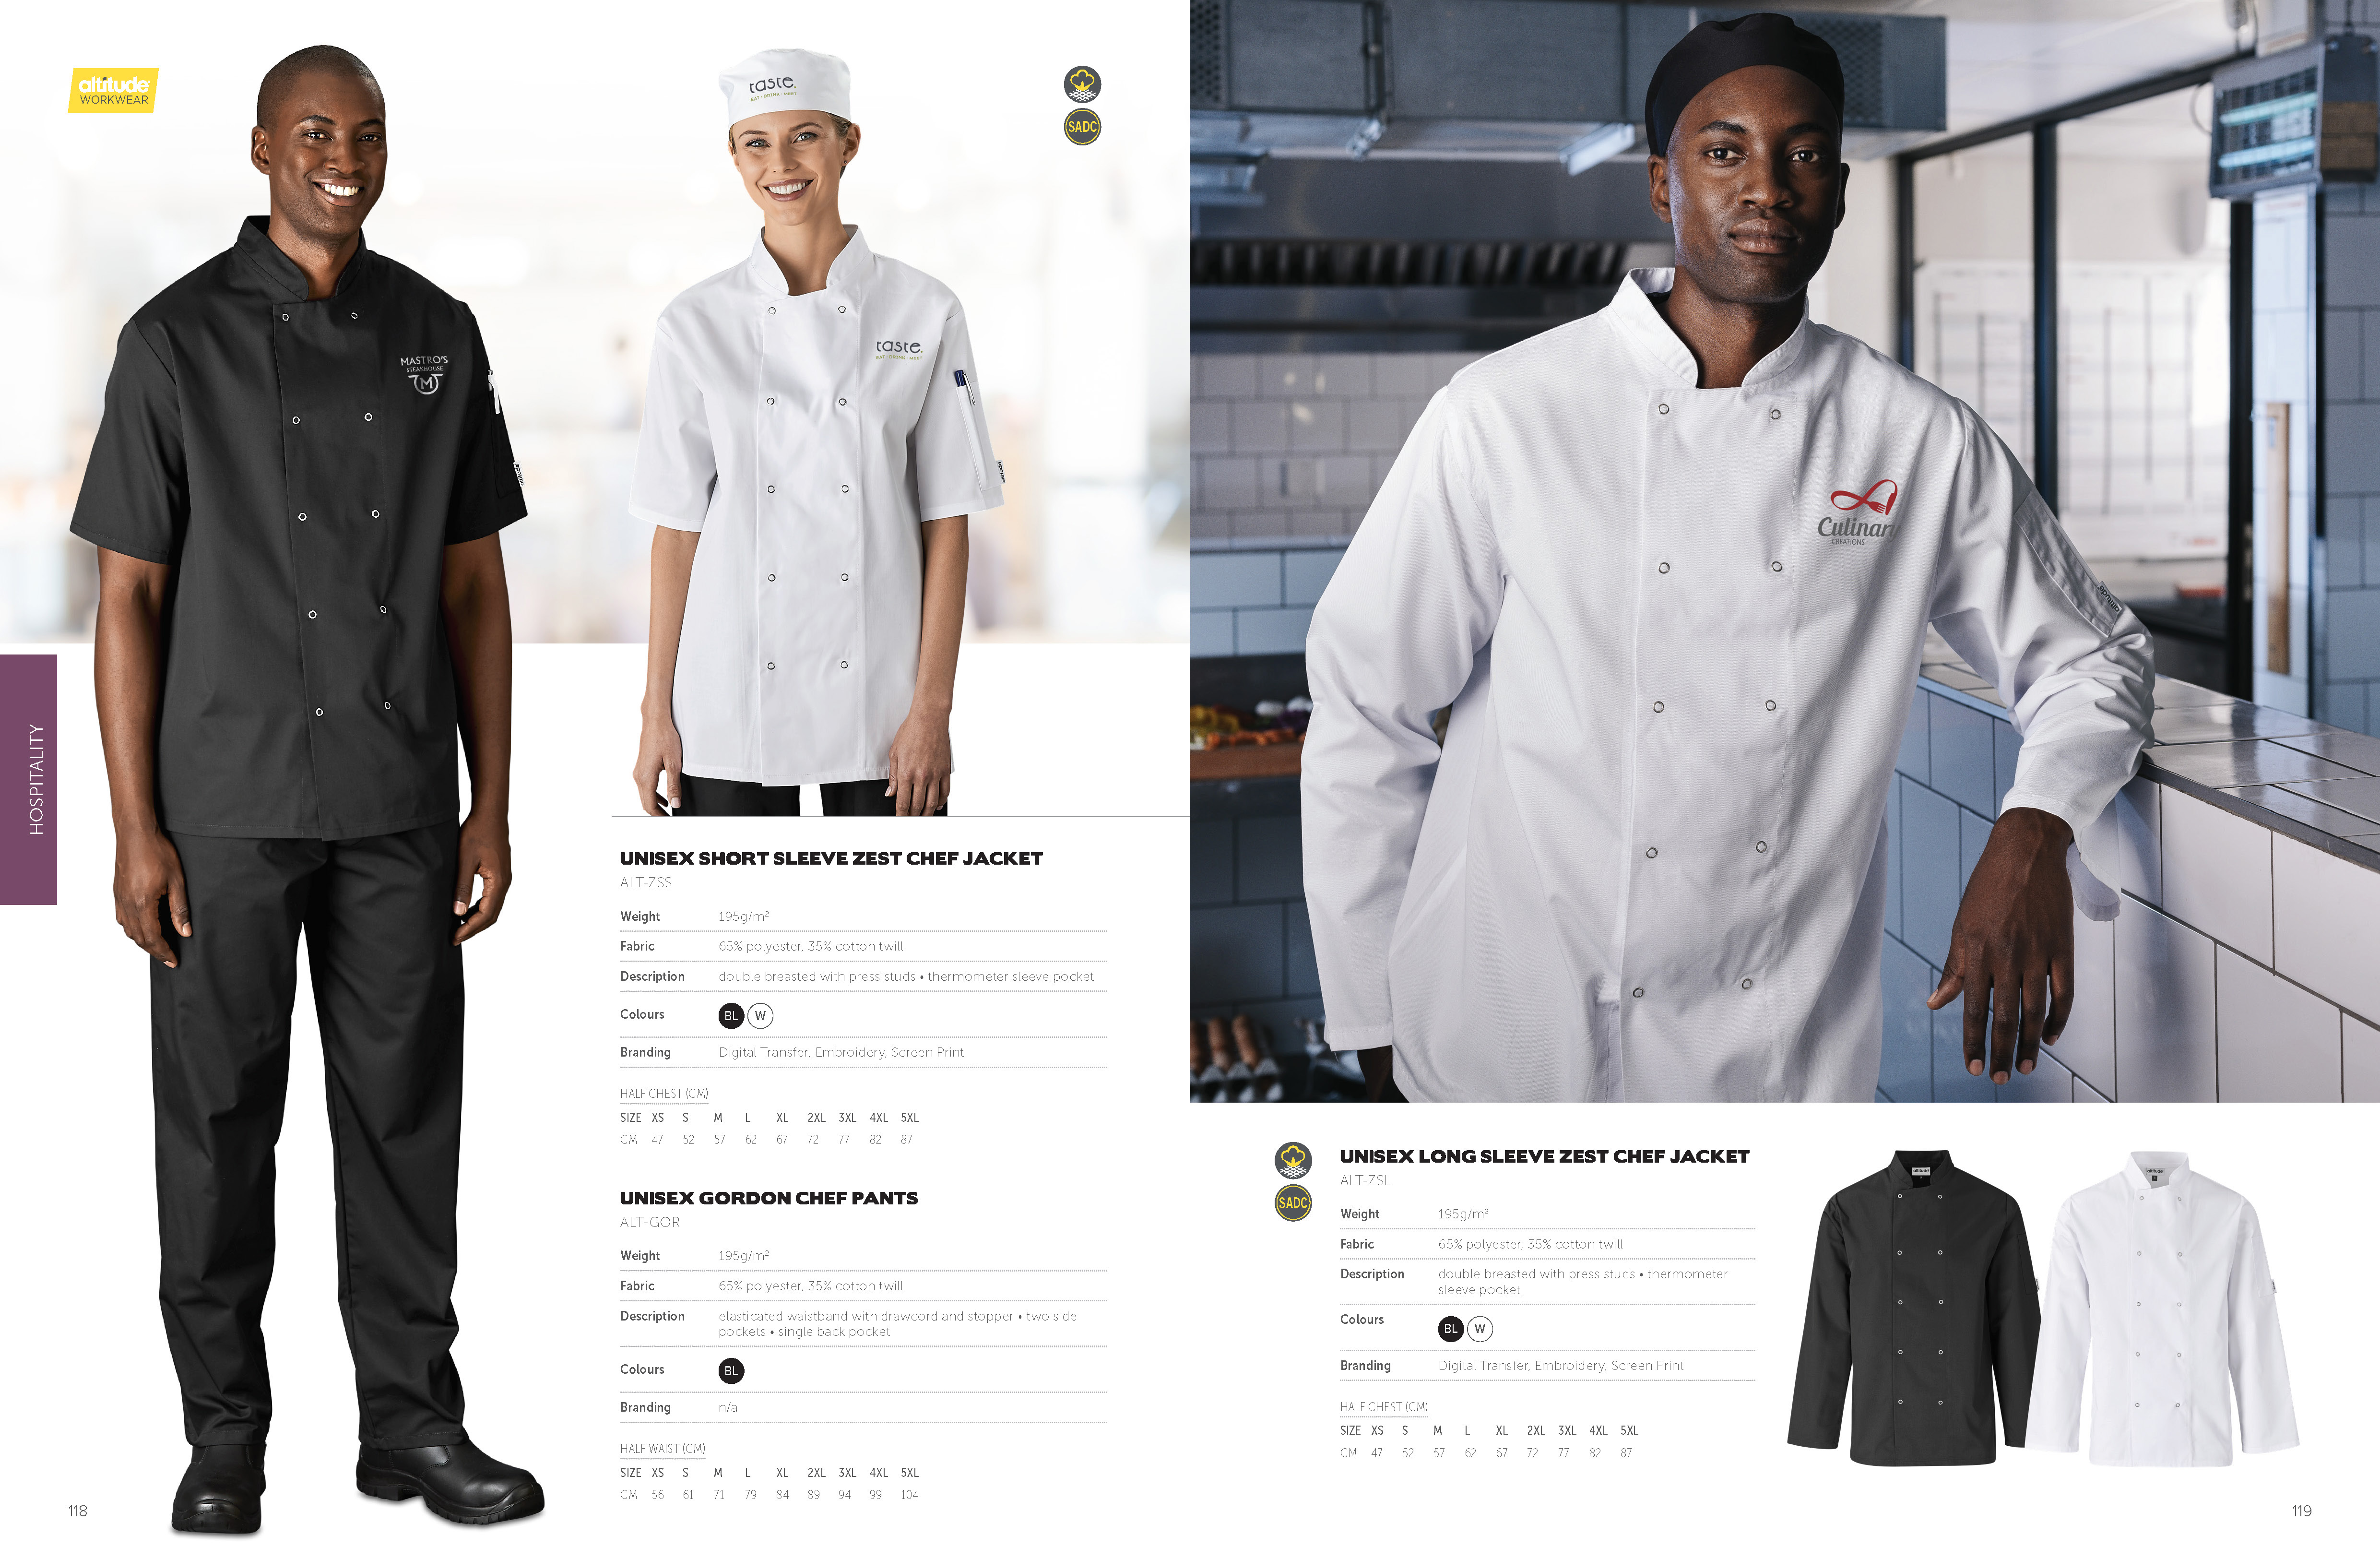 ALT-ZSL - Unisex Long Sleeve Zest Chef Jacket - Catalogue Image